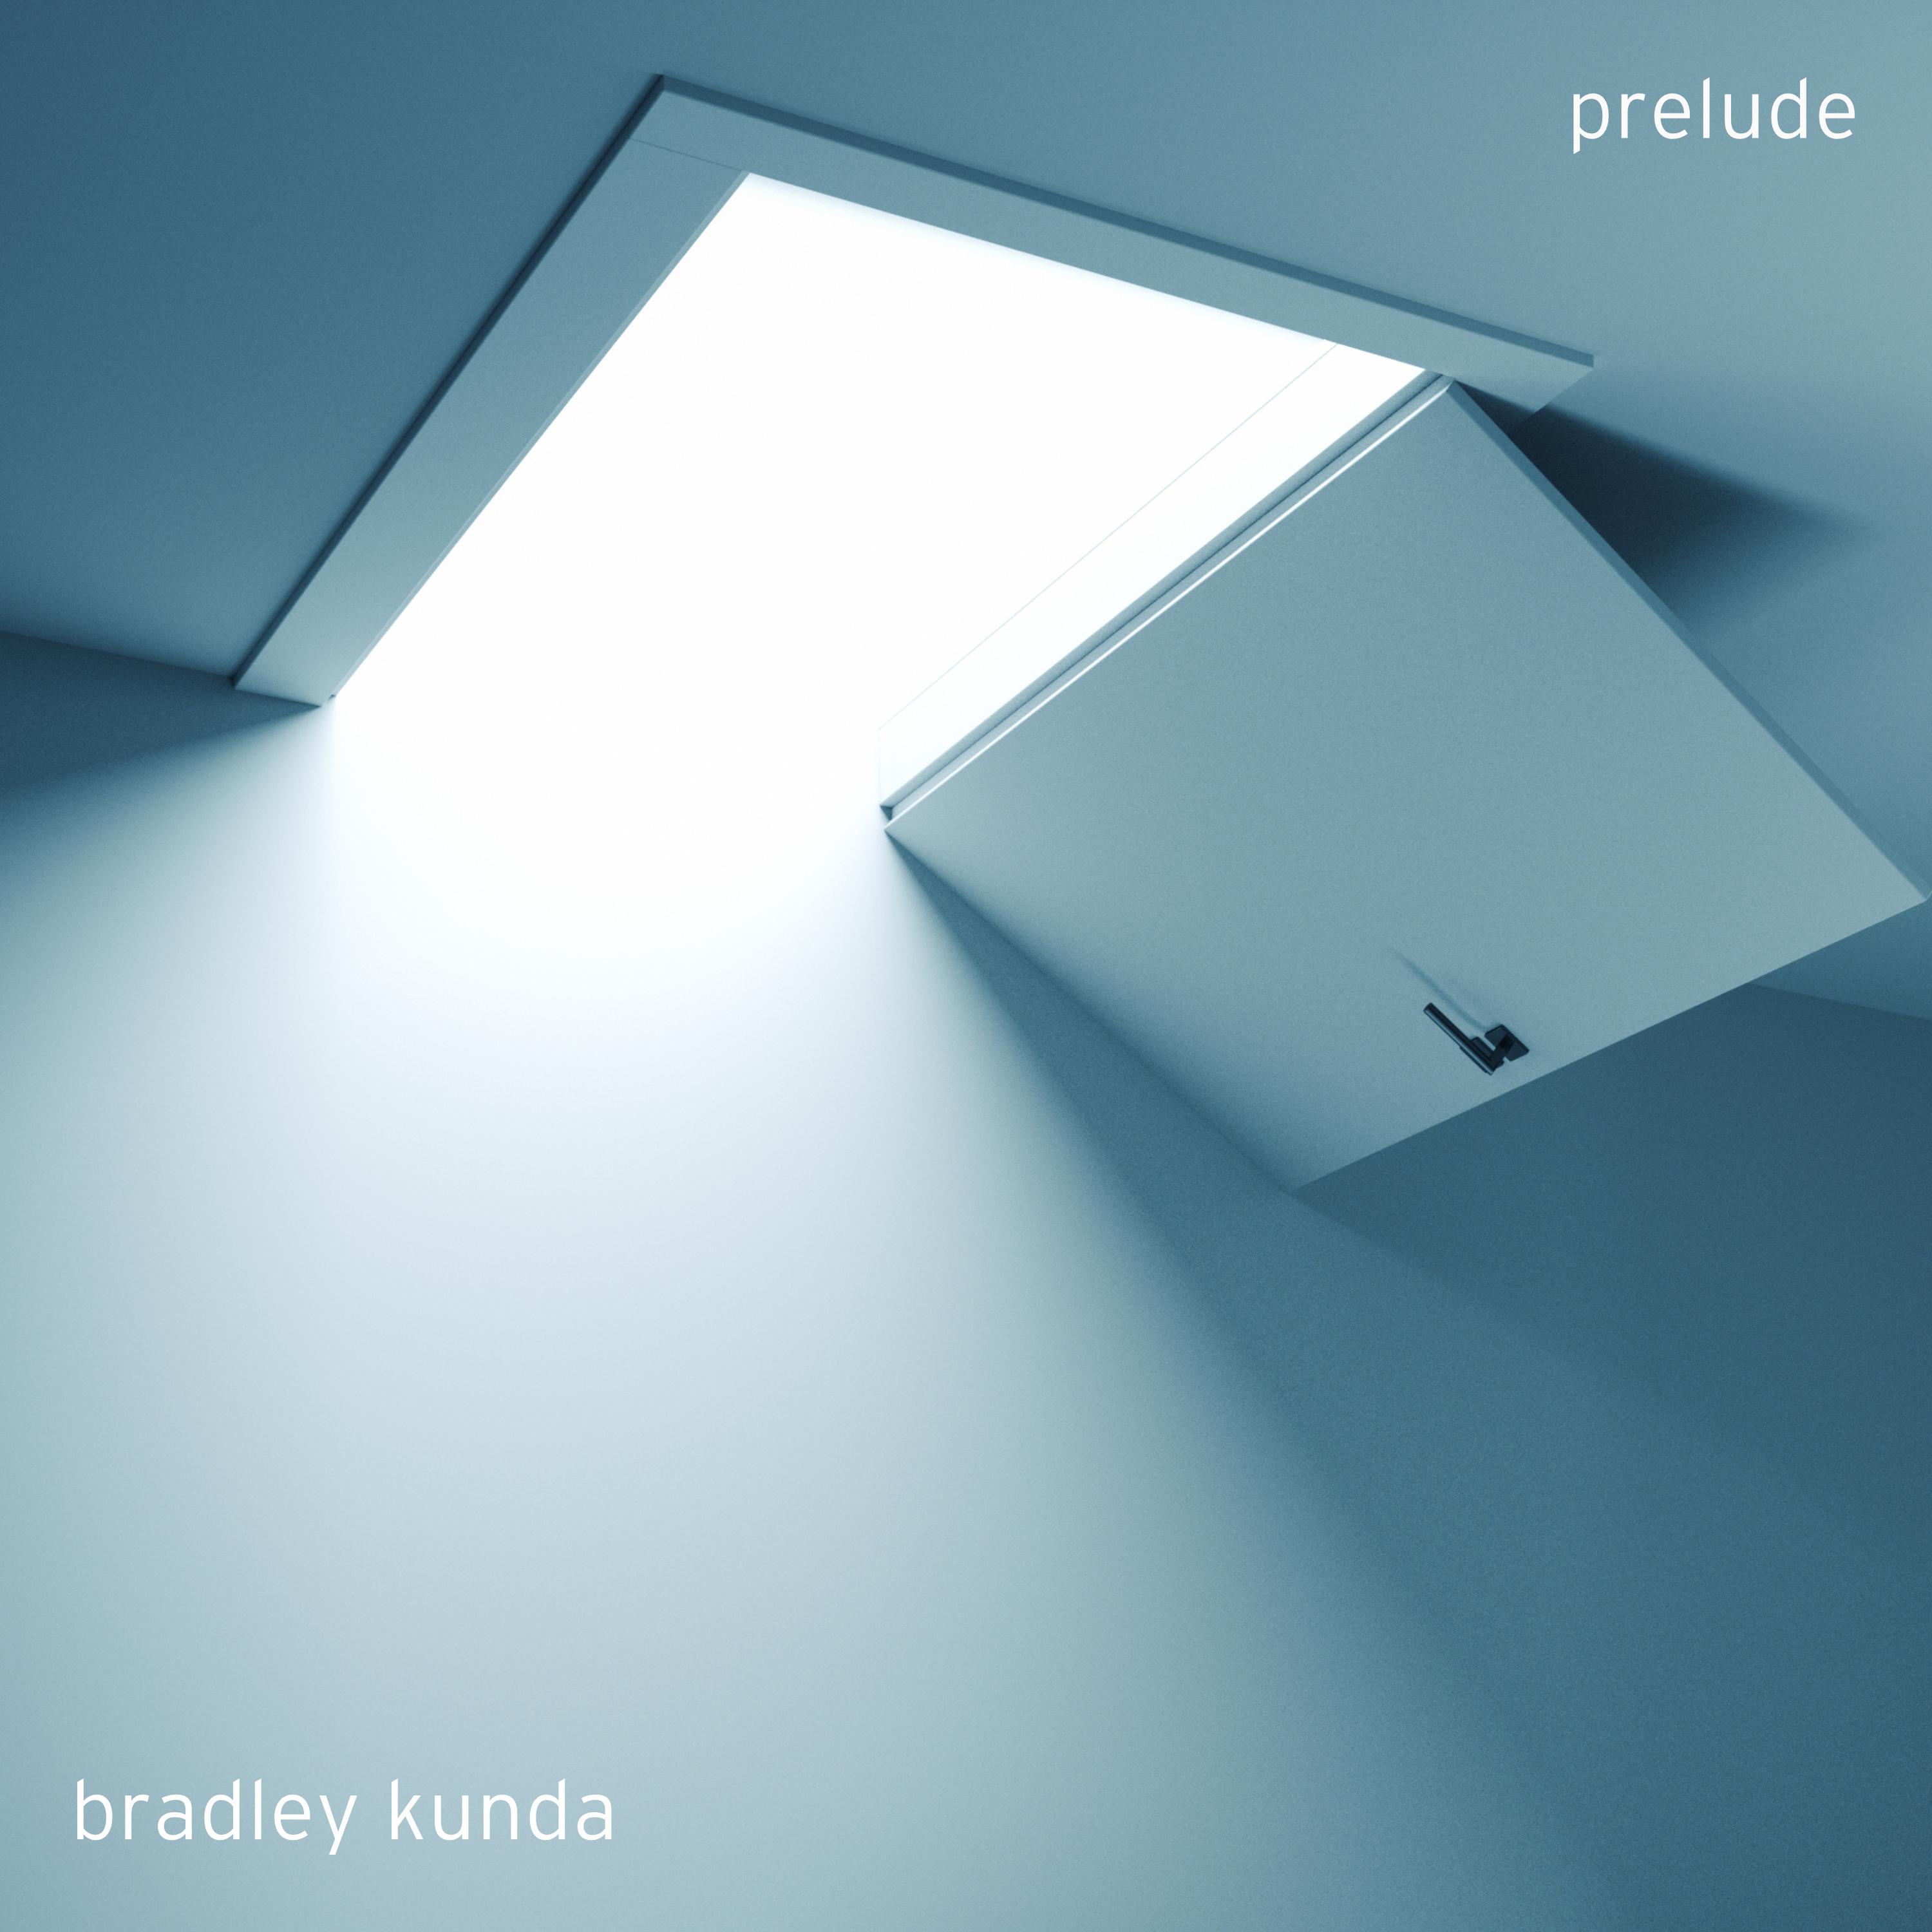 Prelude (Bradley Kunda)